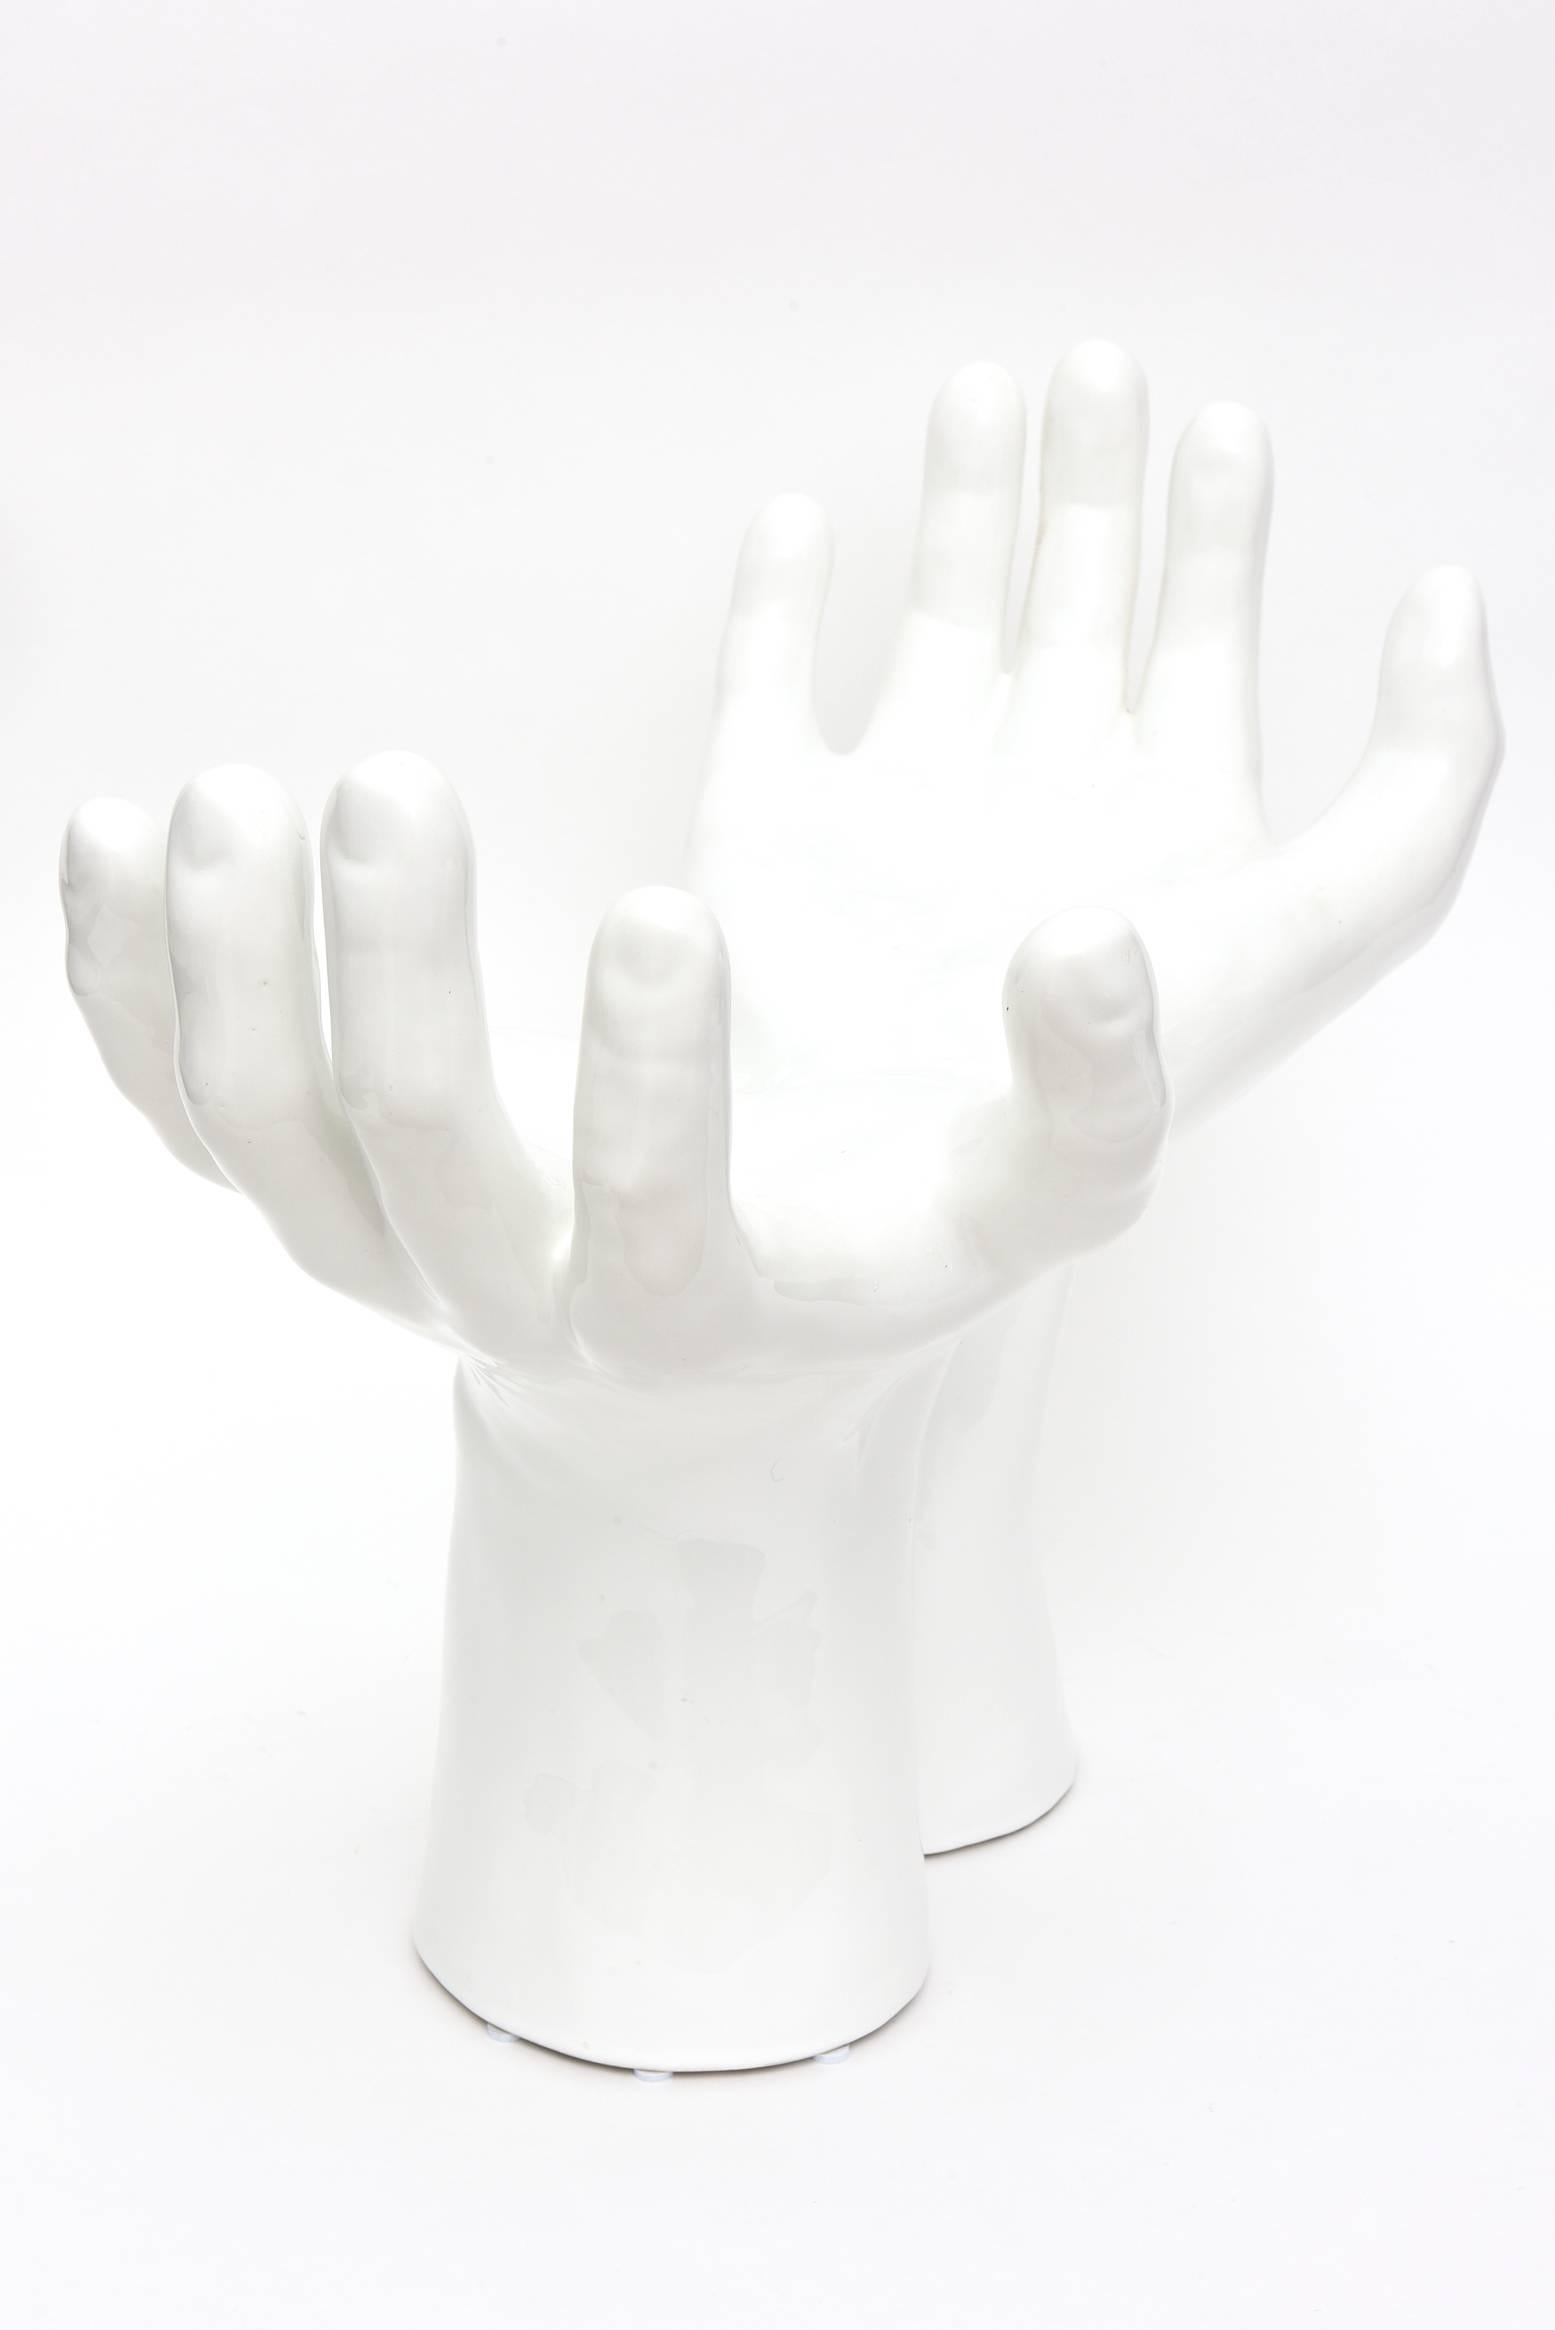 ceramic hand sculpture